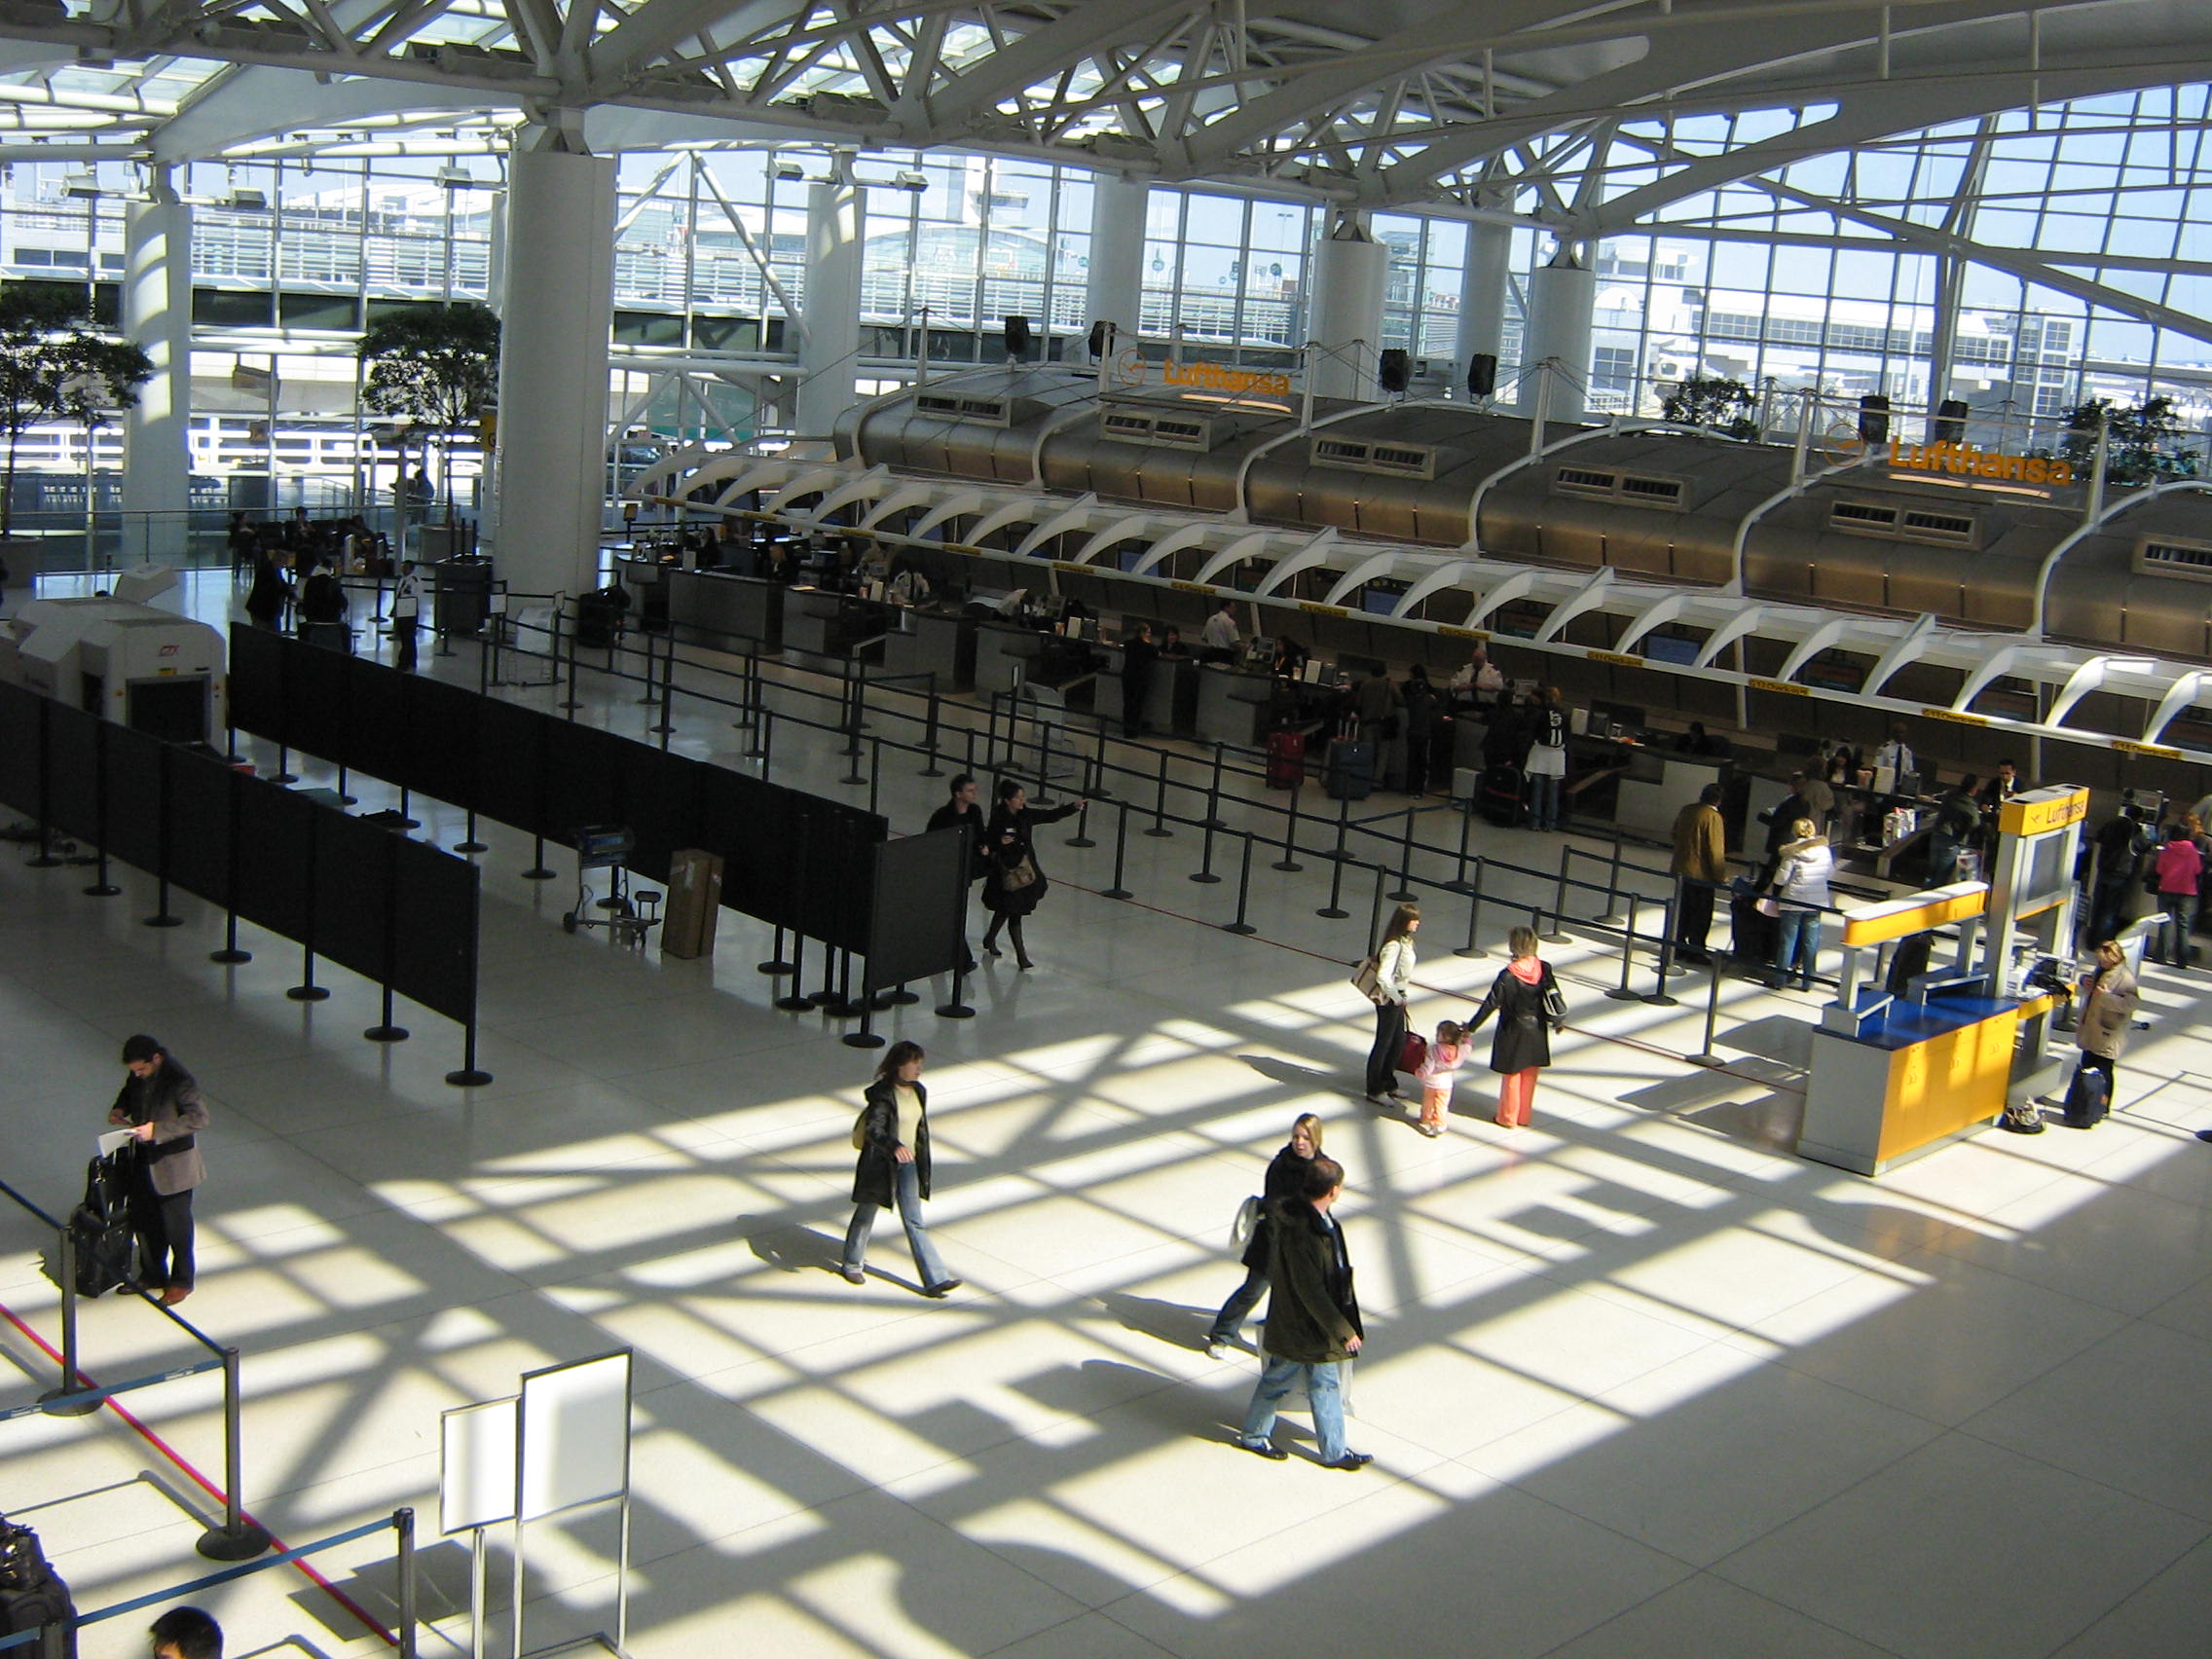 Jfk Airport Terminal